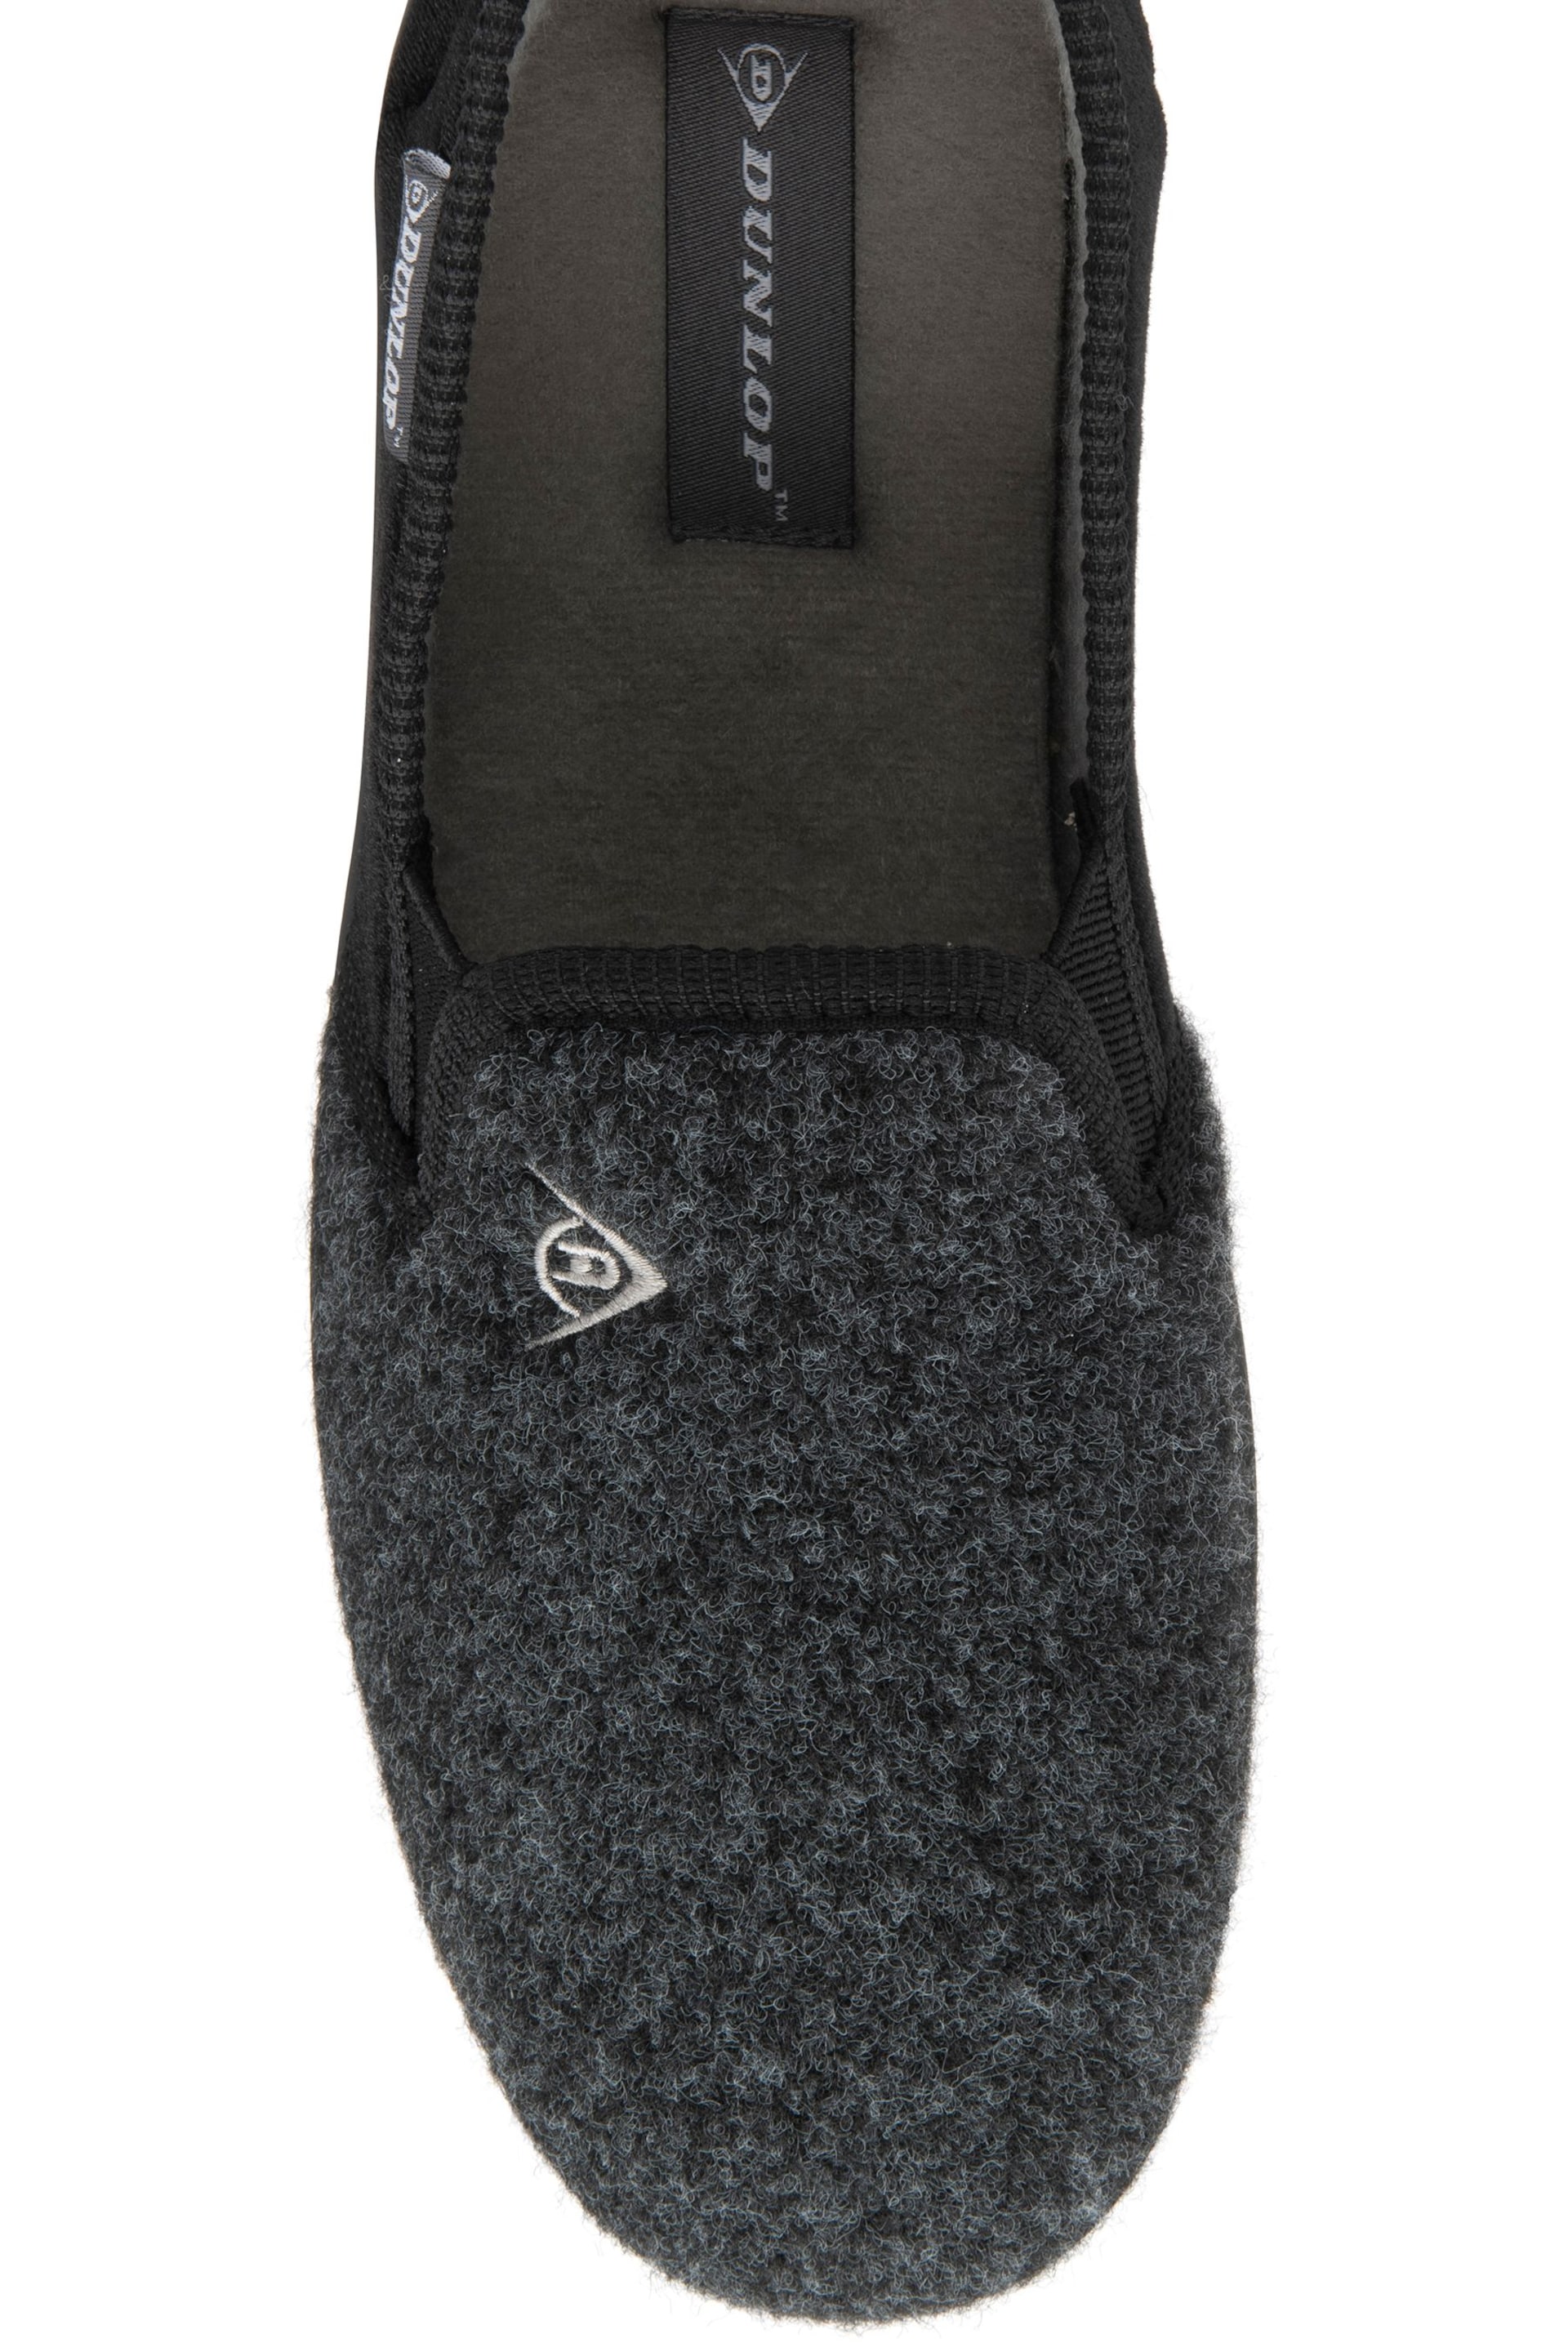 Dunlop Black Mens Full Shoes Felt Slippers - Image 4 of 4